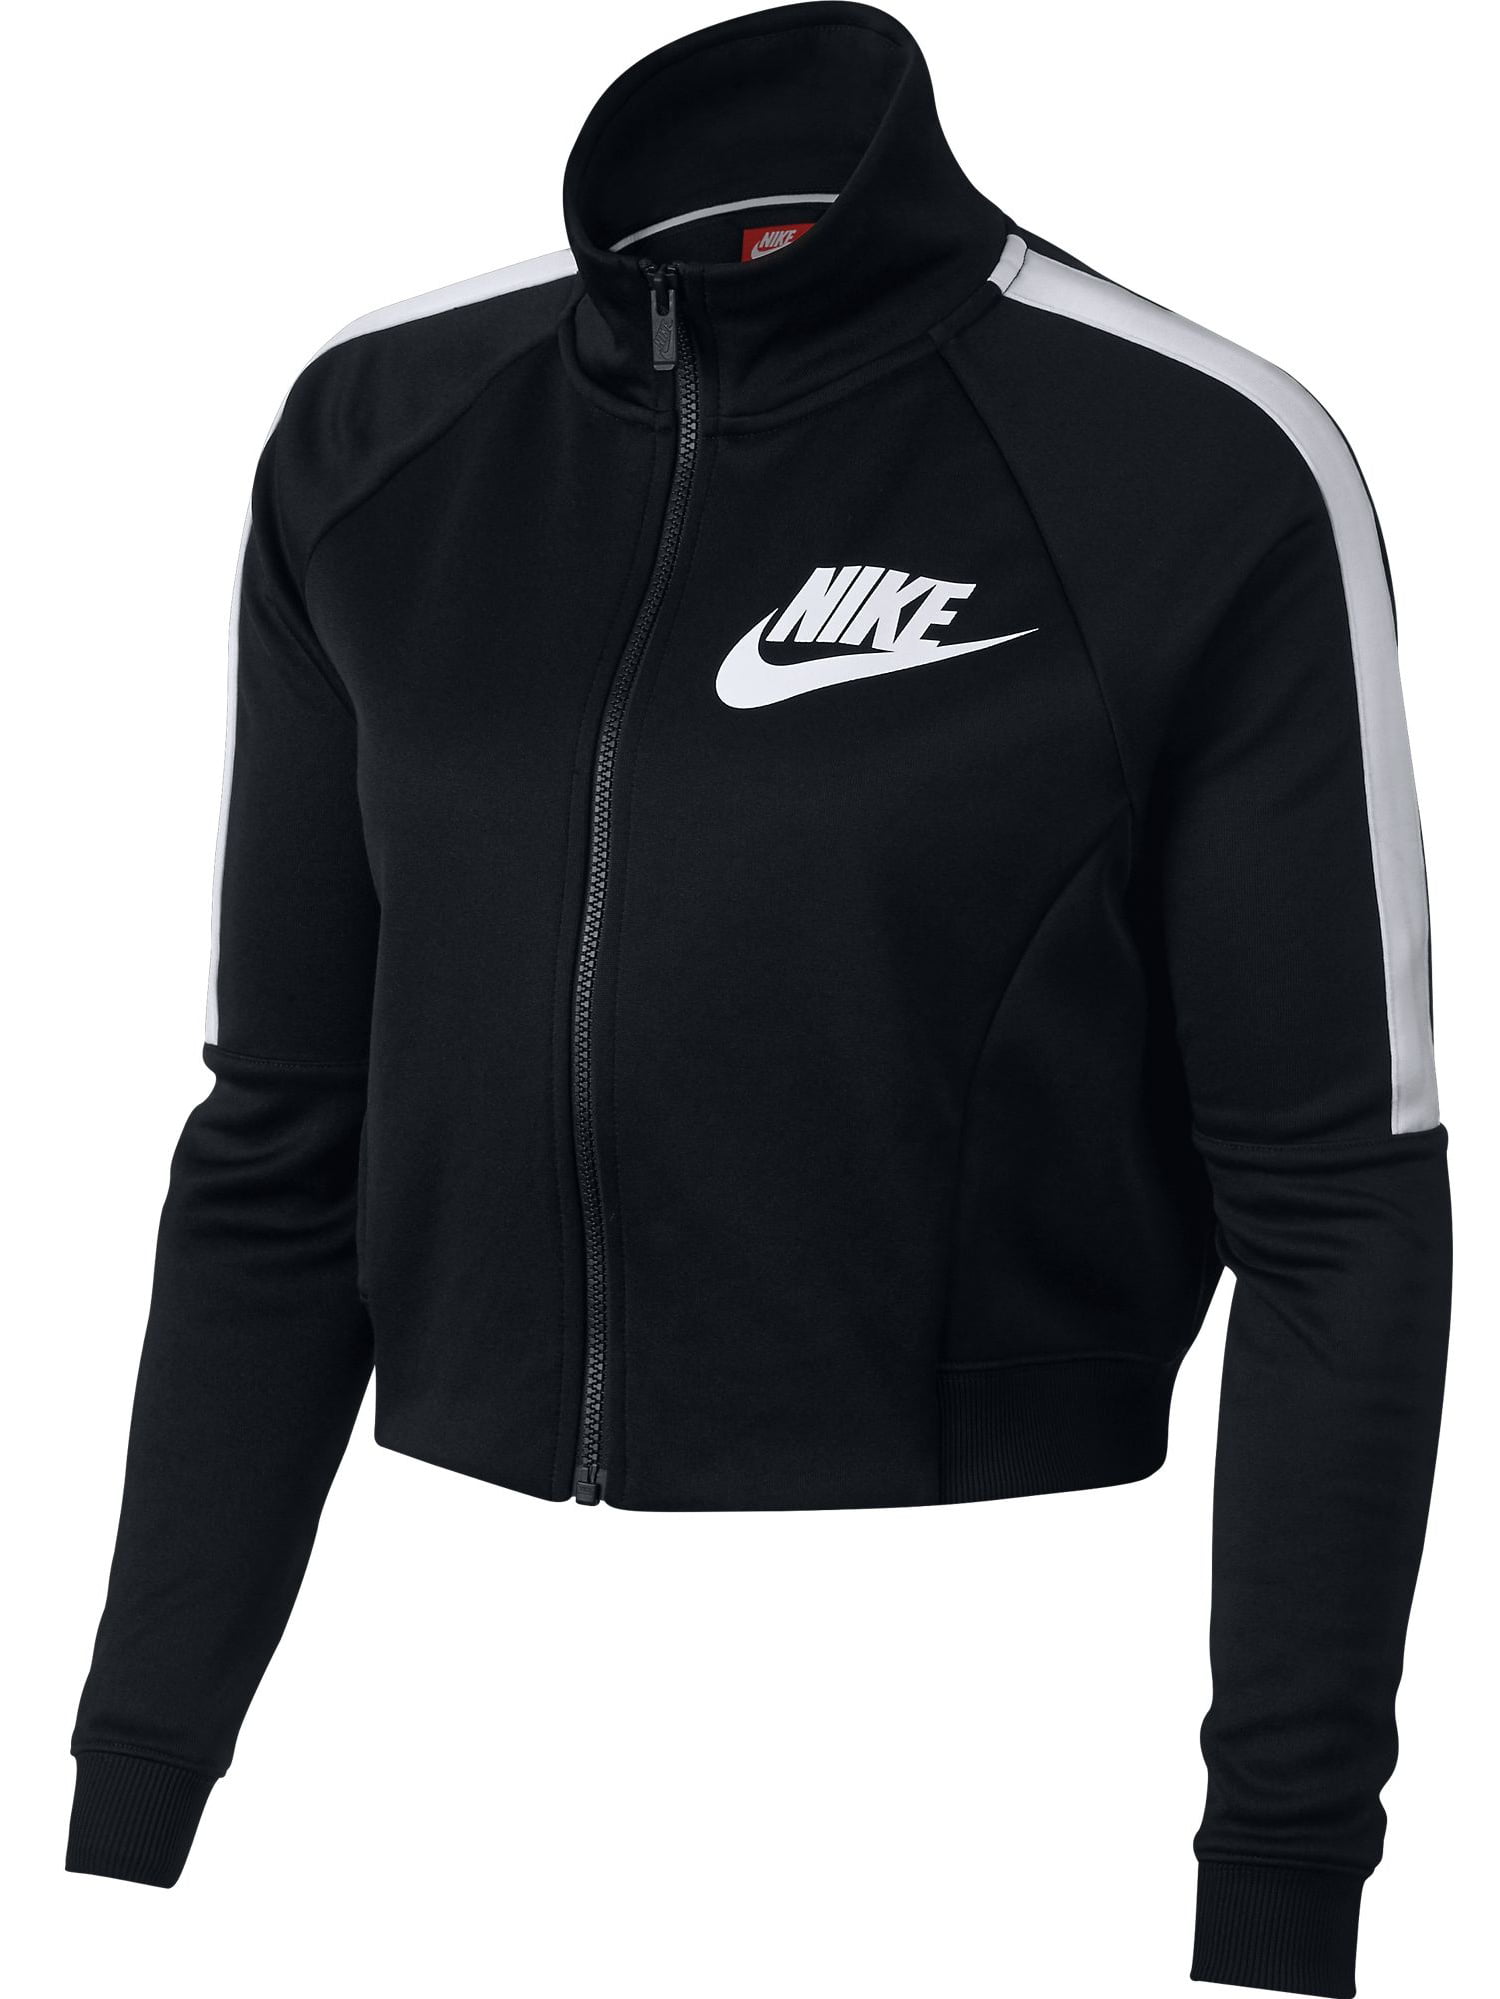 Nike Sportswear N98 Women's Crop Track Jacket Black/White 